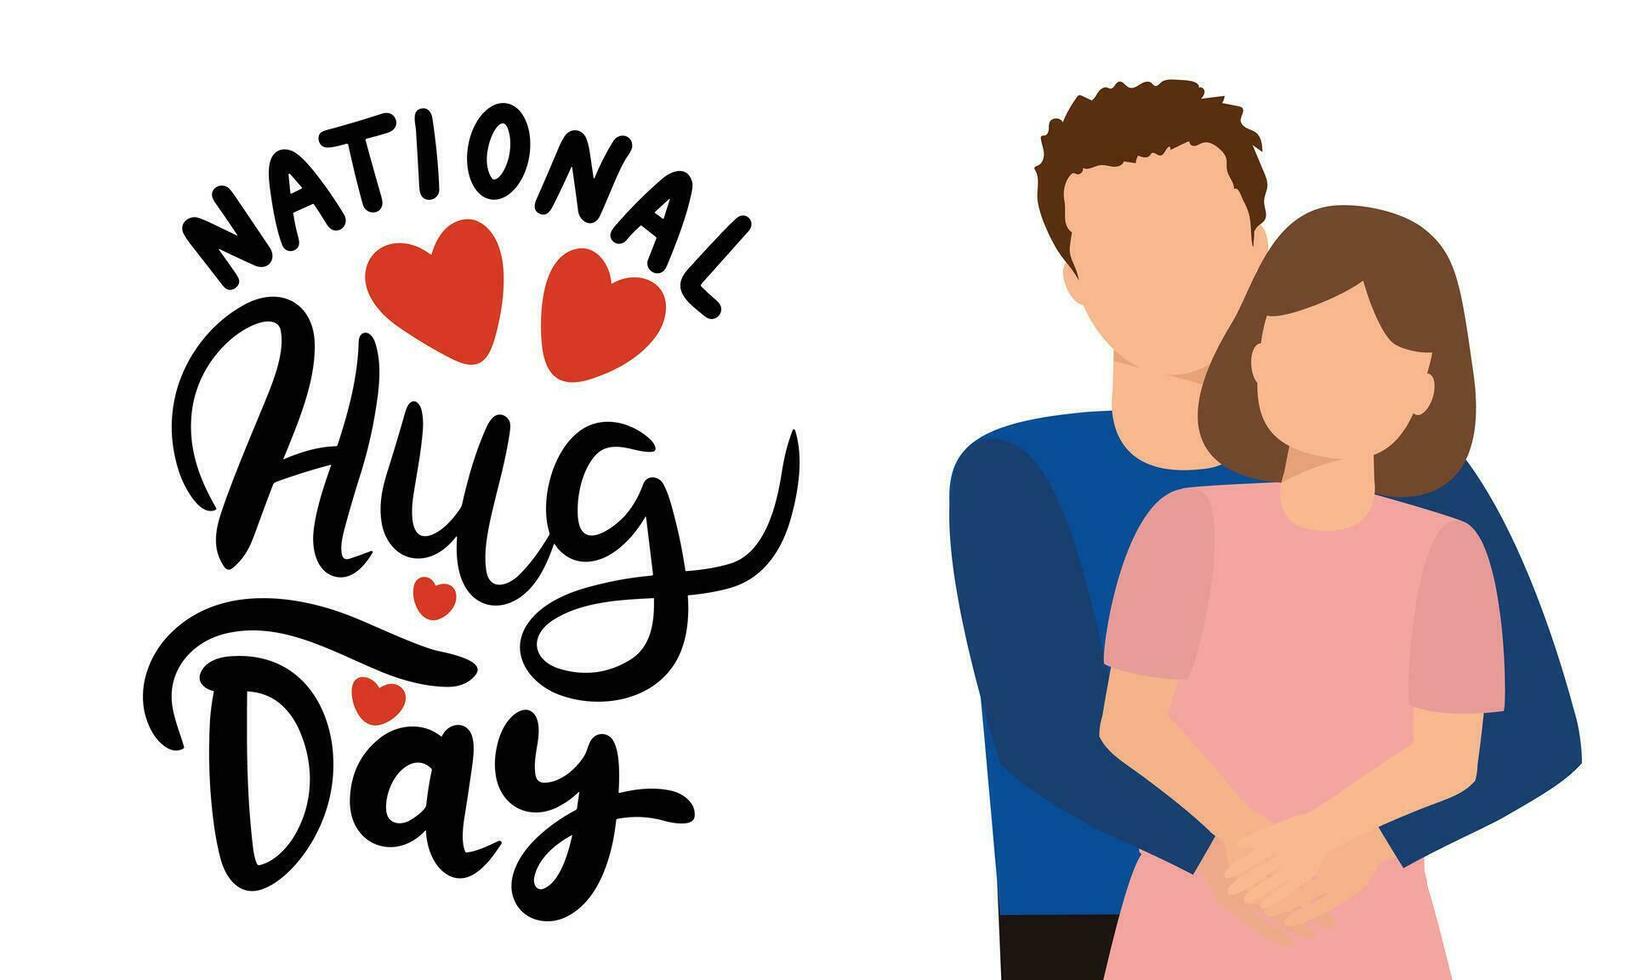 nationell kram dag baner. handstil inskrift, nationell kram dag. man och kvinna är kramar. hand dragen vektor konst.